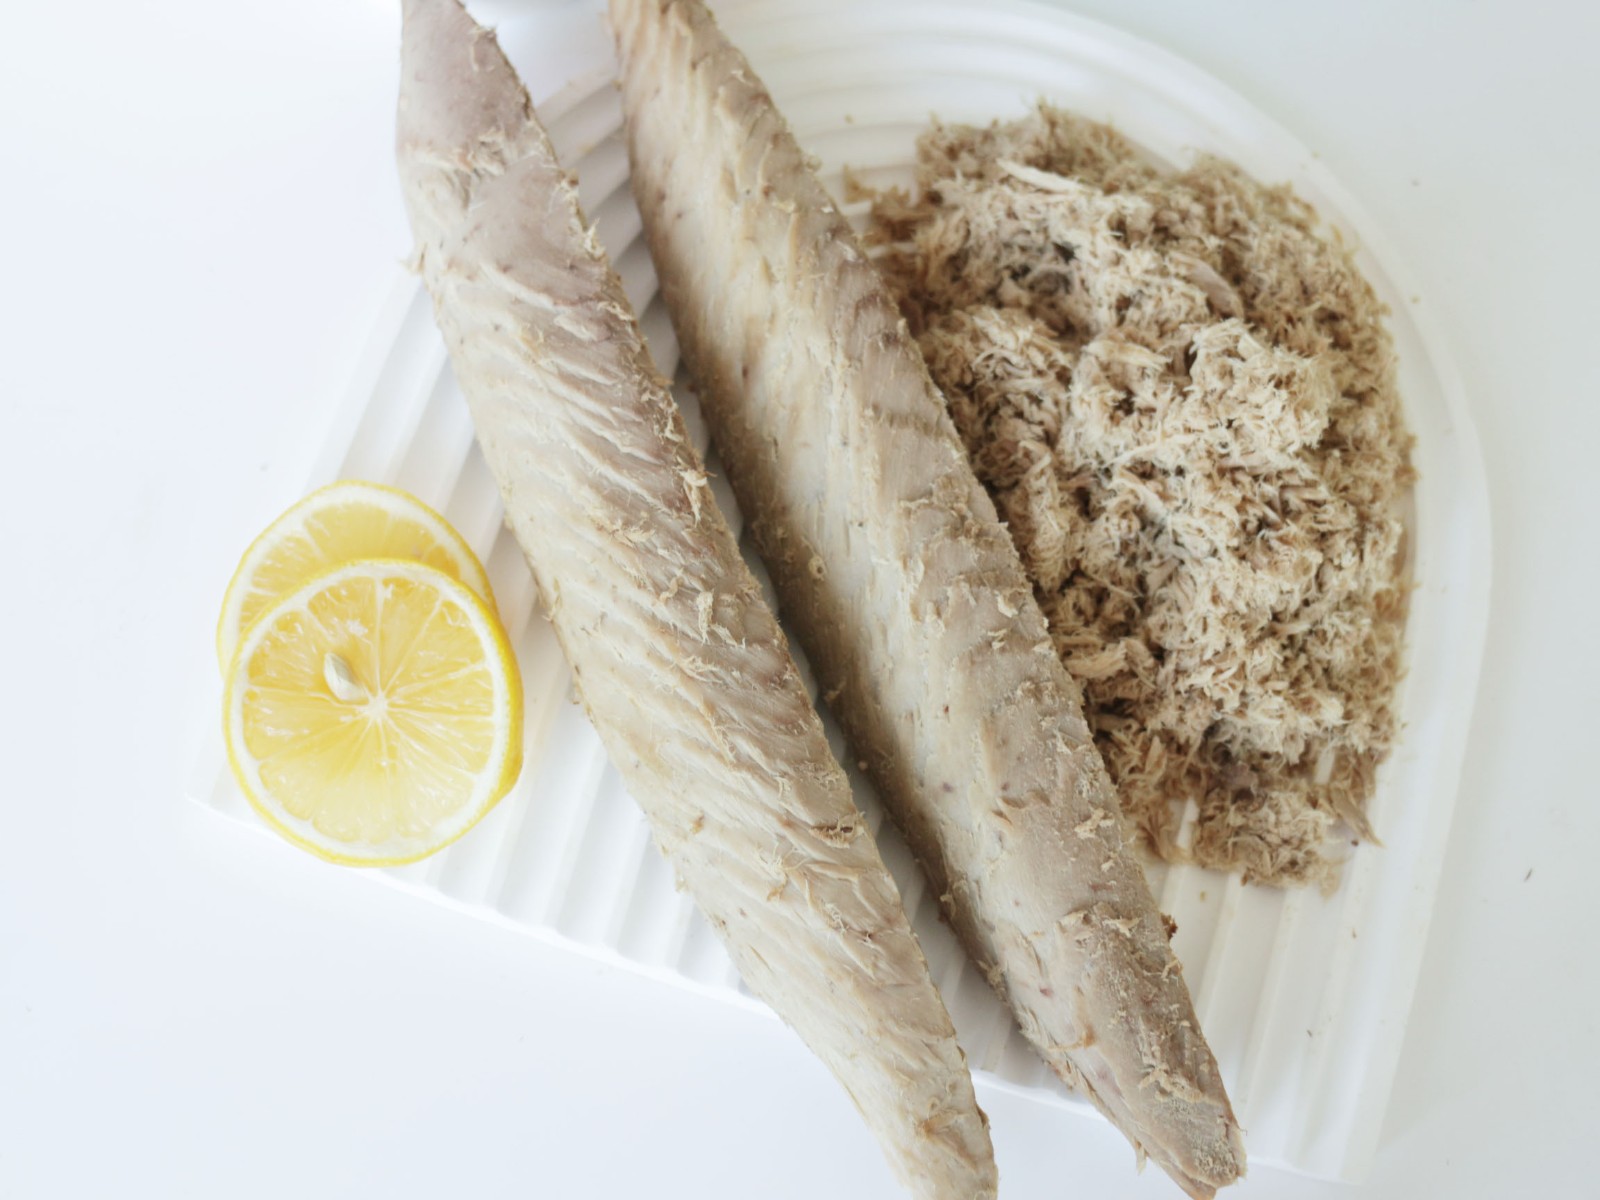 Precooked bonito
tuna(Auxis
thazard) loins